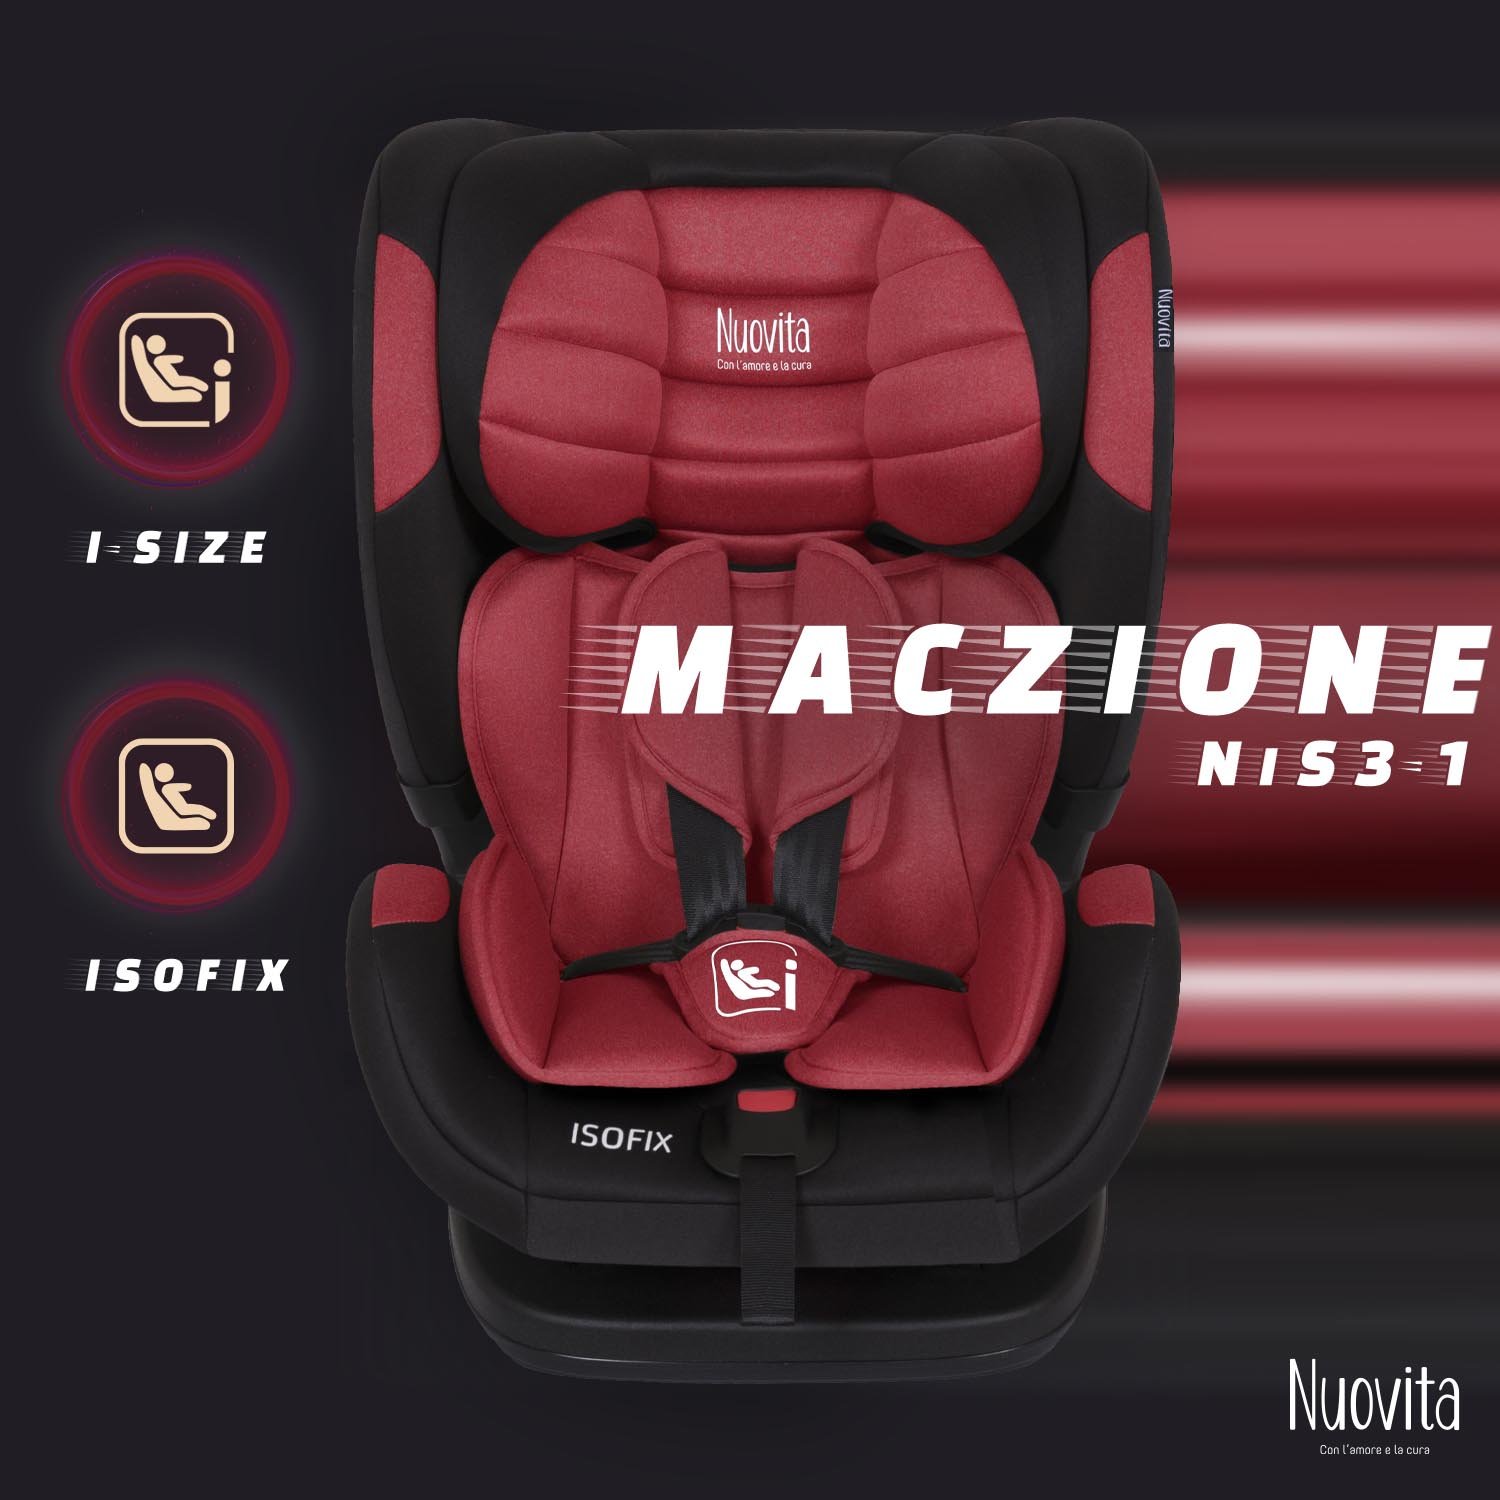 Детское автокресло Nuovita Maczione NiS3-1, Isofix, группа 1,2,3, 9-36 кг (Красный) автокресло nuovita maczione nis3 1